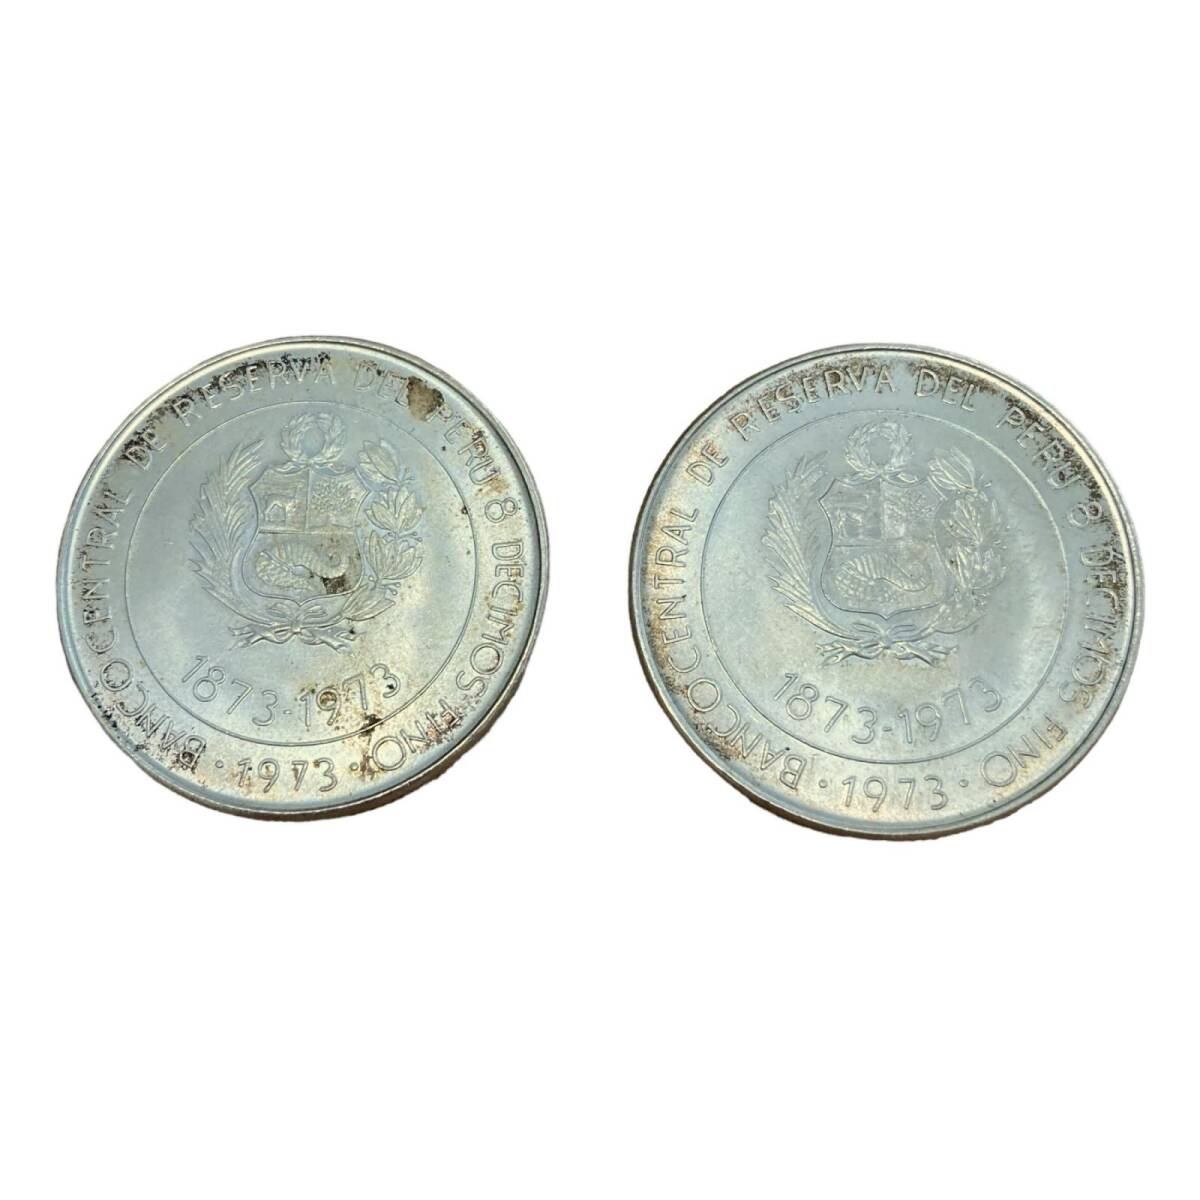 日本ペルー修好100周年記念銀貨 100ソル ペルー銀貨 1873-1973 【2枚】 コイン_画像1